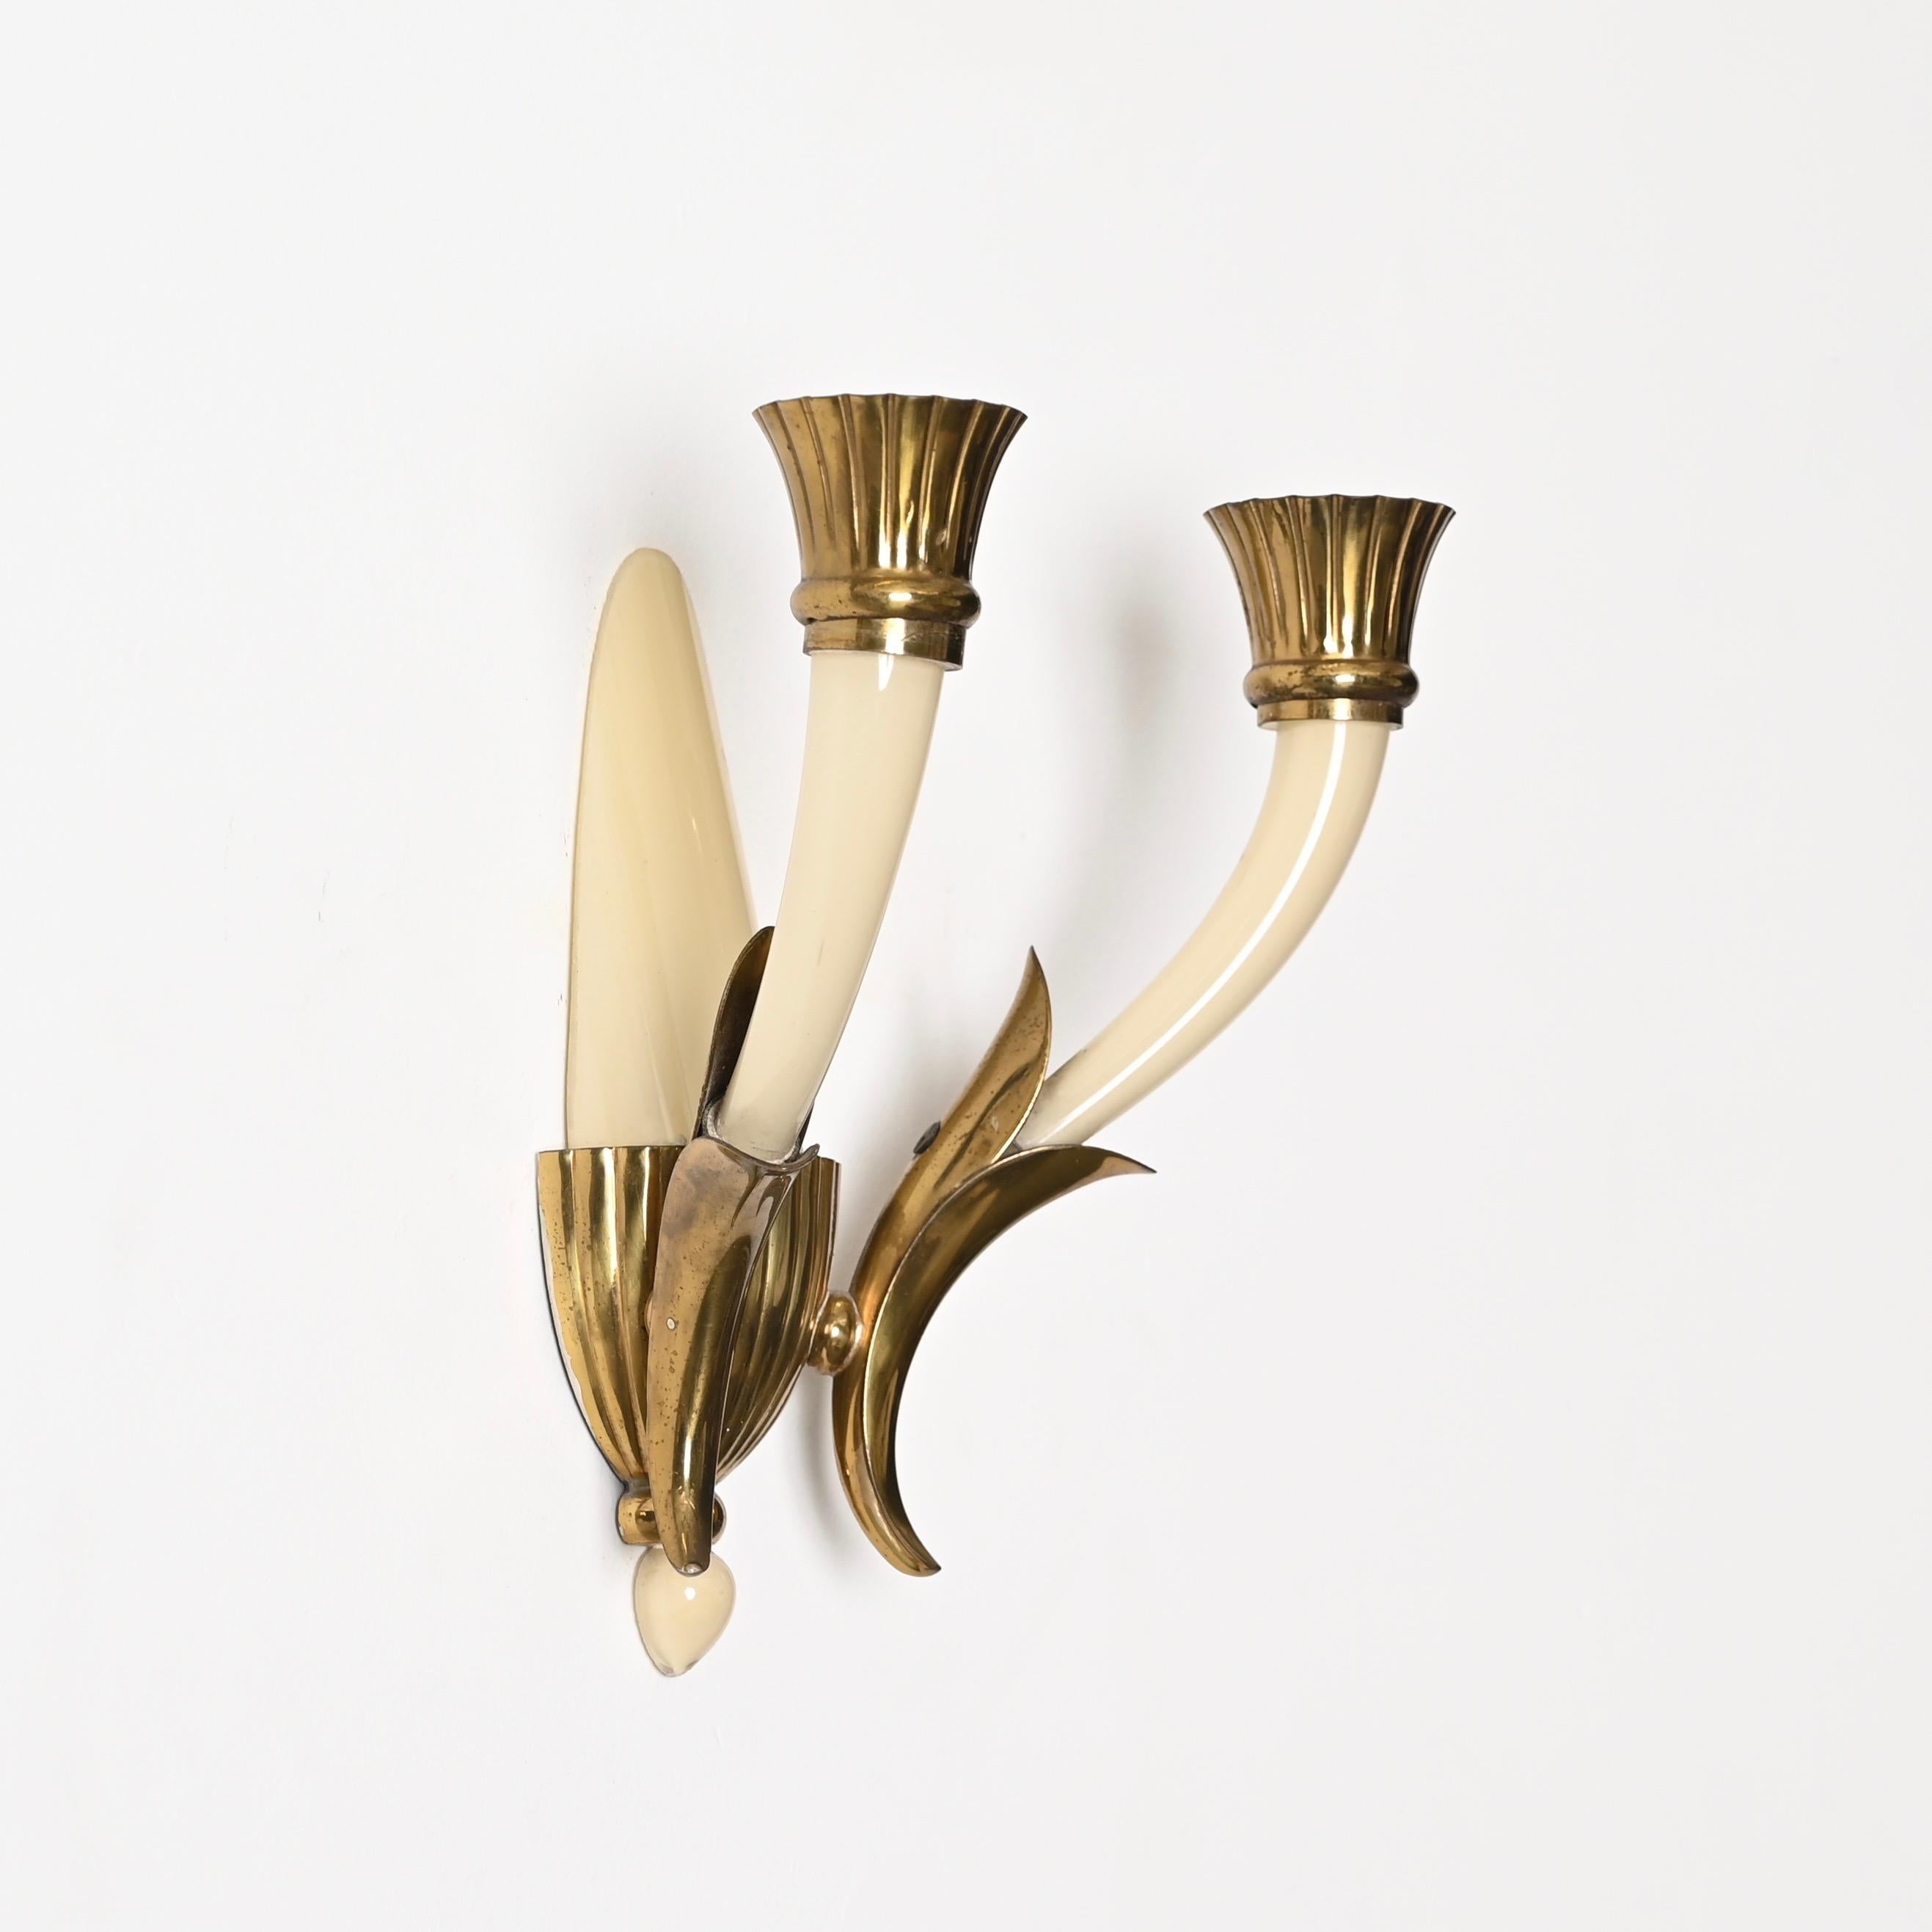 Wunderschönes Paar Wandlampen aus elfenbeinfarbenem Murano-Kunstglas und Messing. Diese charmanten Wandleuchter wurden von Guglielmo Ulrich entworfen und in den 1940er Jahren in Venedig hergestellt. 

Die Qualität dieser seltenen Wandleuchten ist